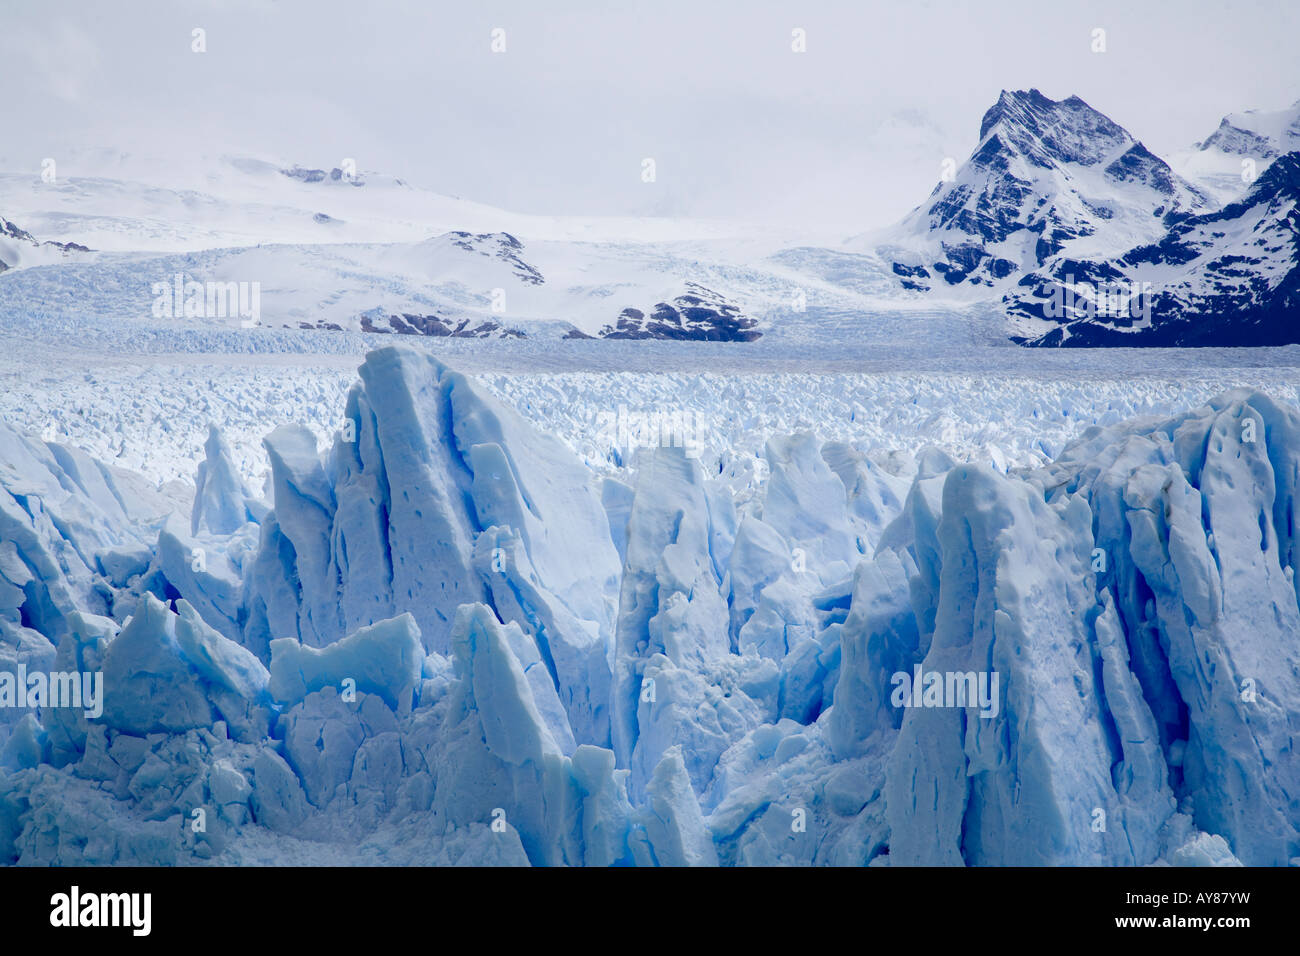 The Perito Moreno Glacier in Southern Argentina Stock Photo